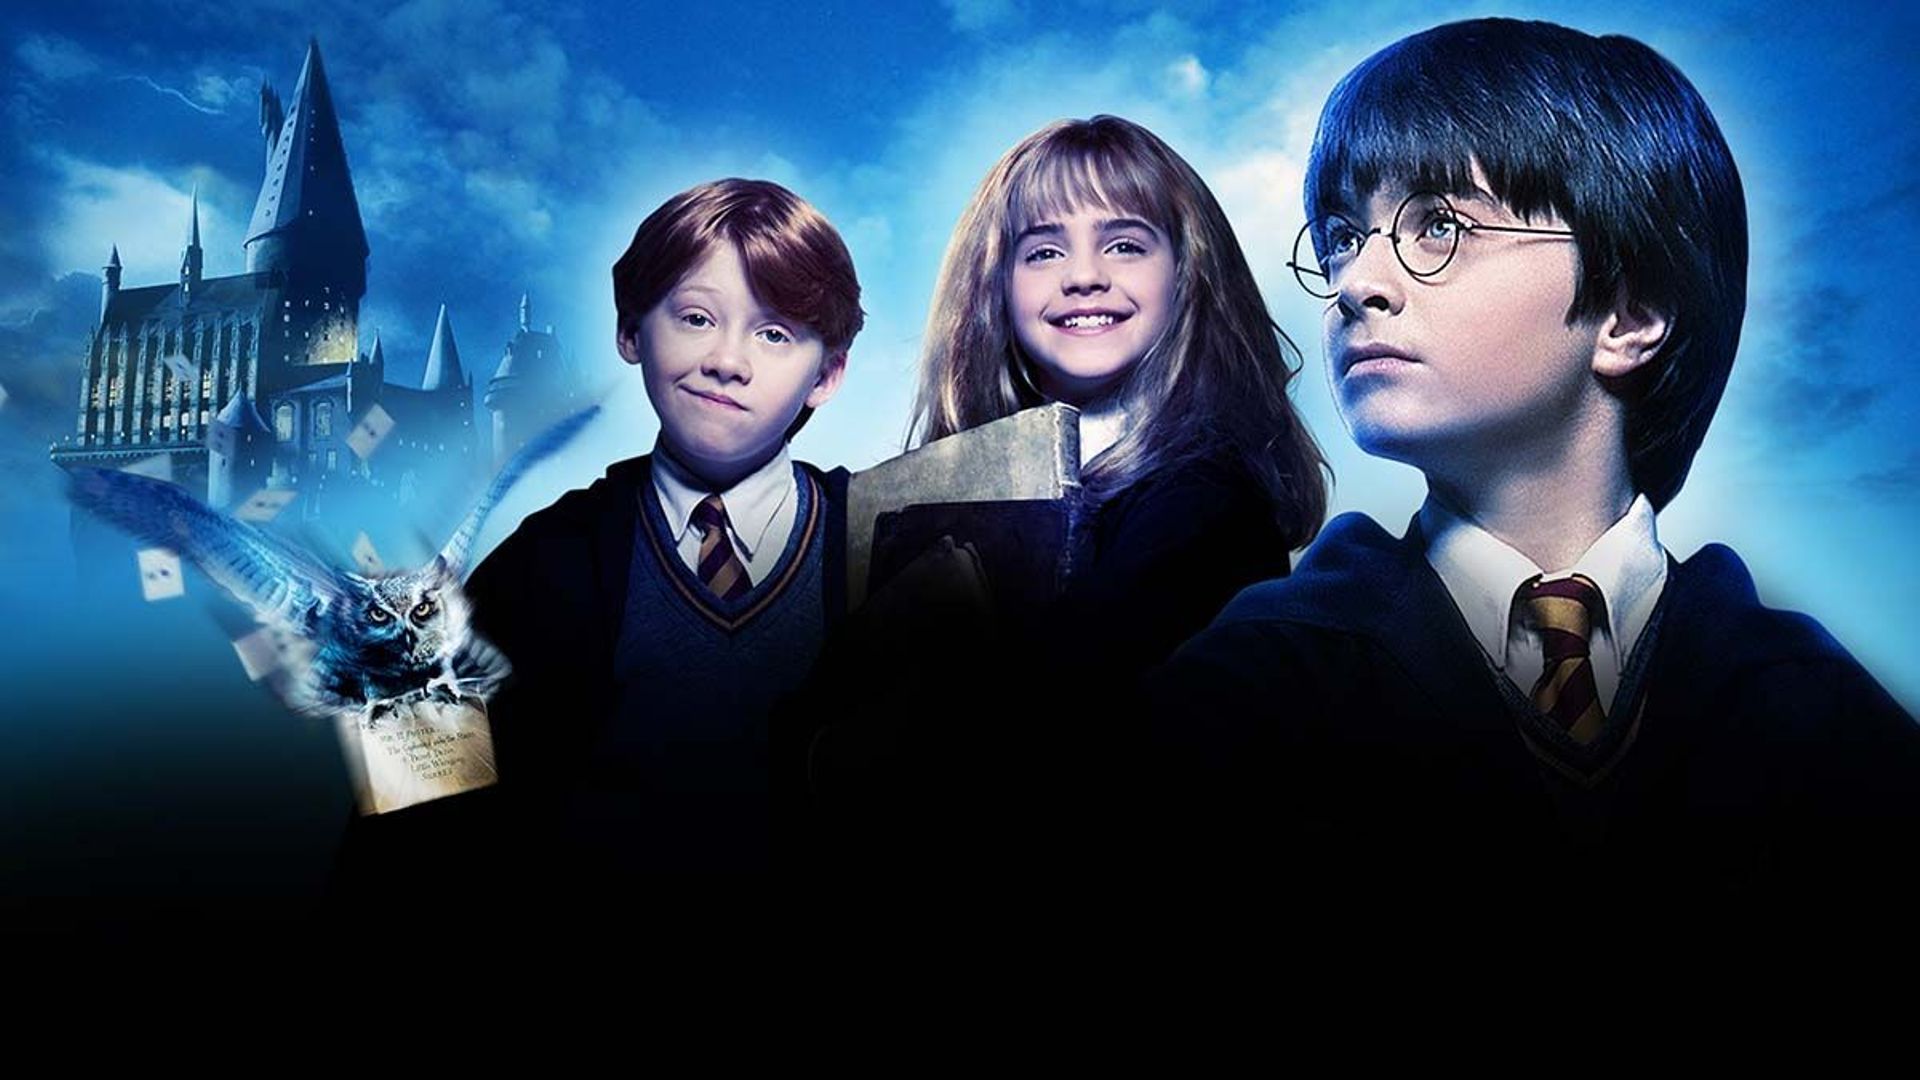 Harry Potter à l'école des sorciers' fête ses 20 ans : découvrez